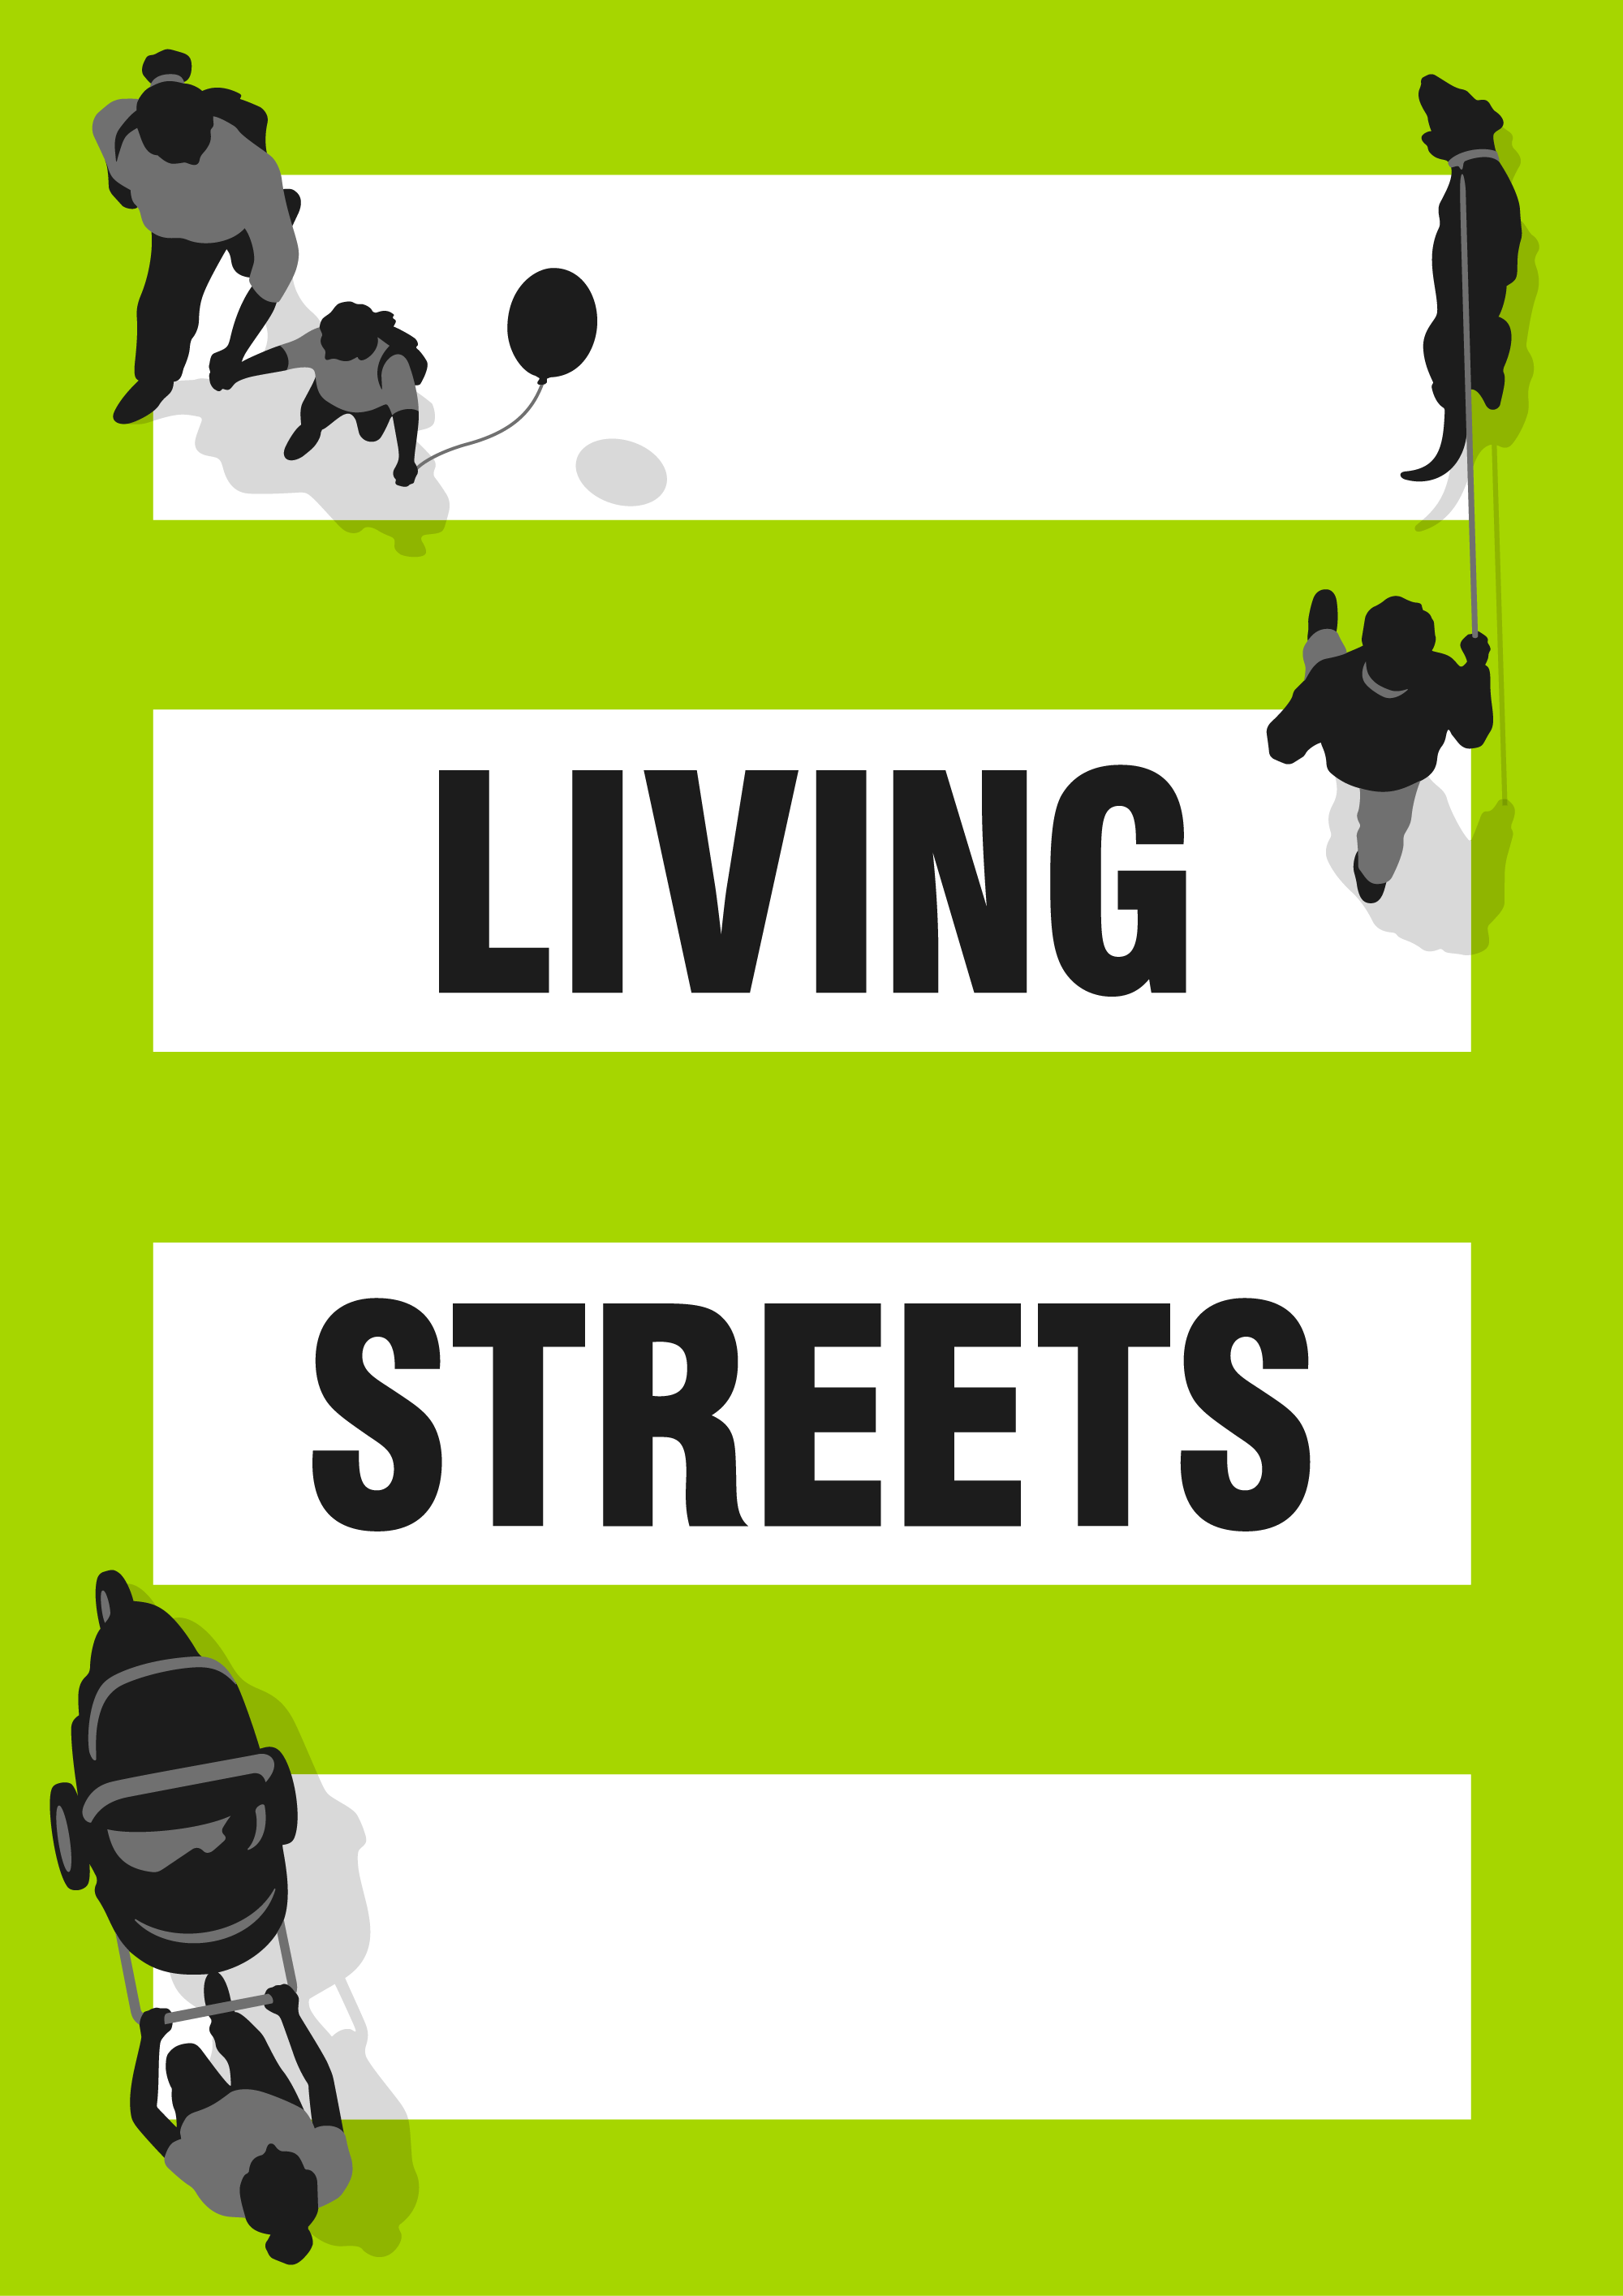 (c) Livingstreets.org.uk